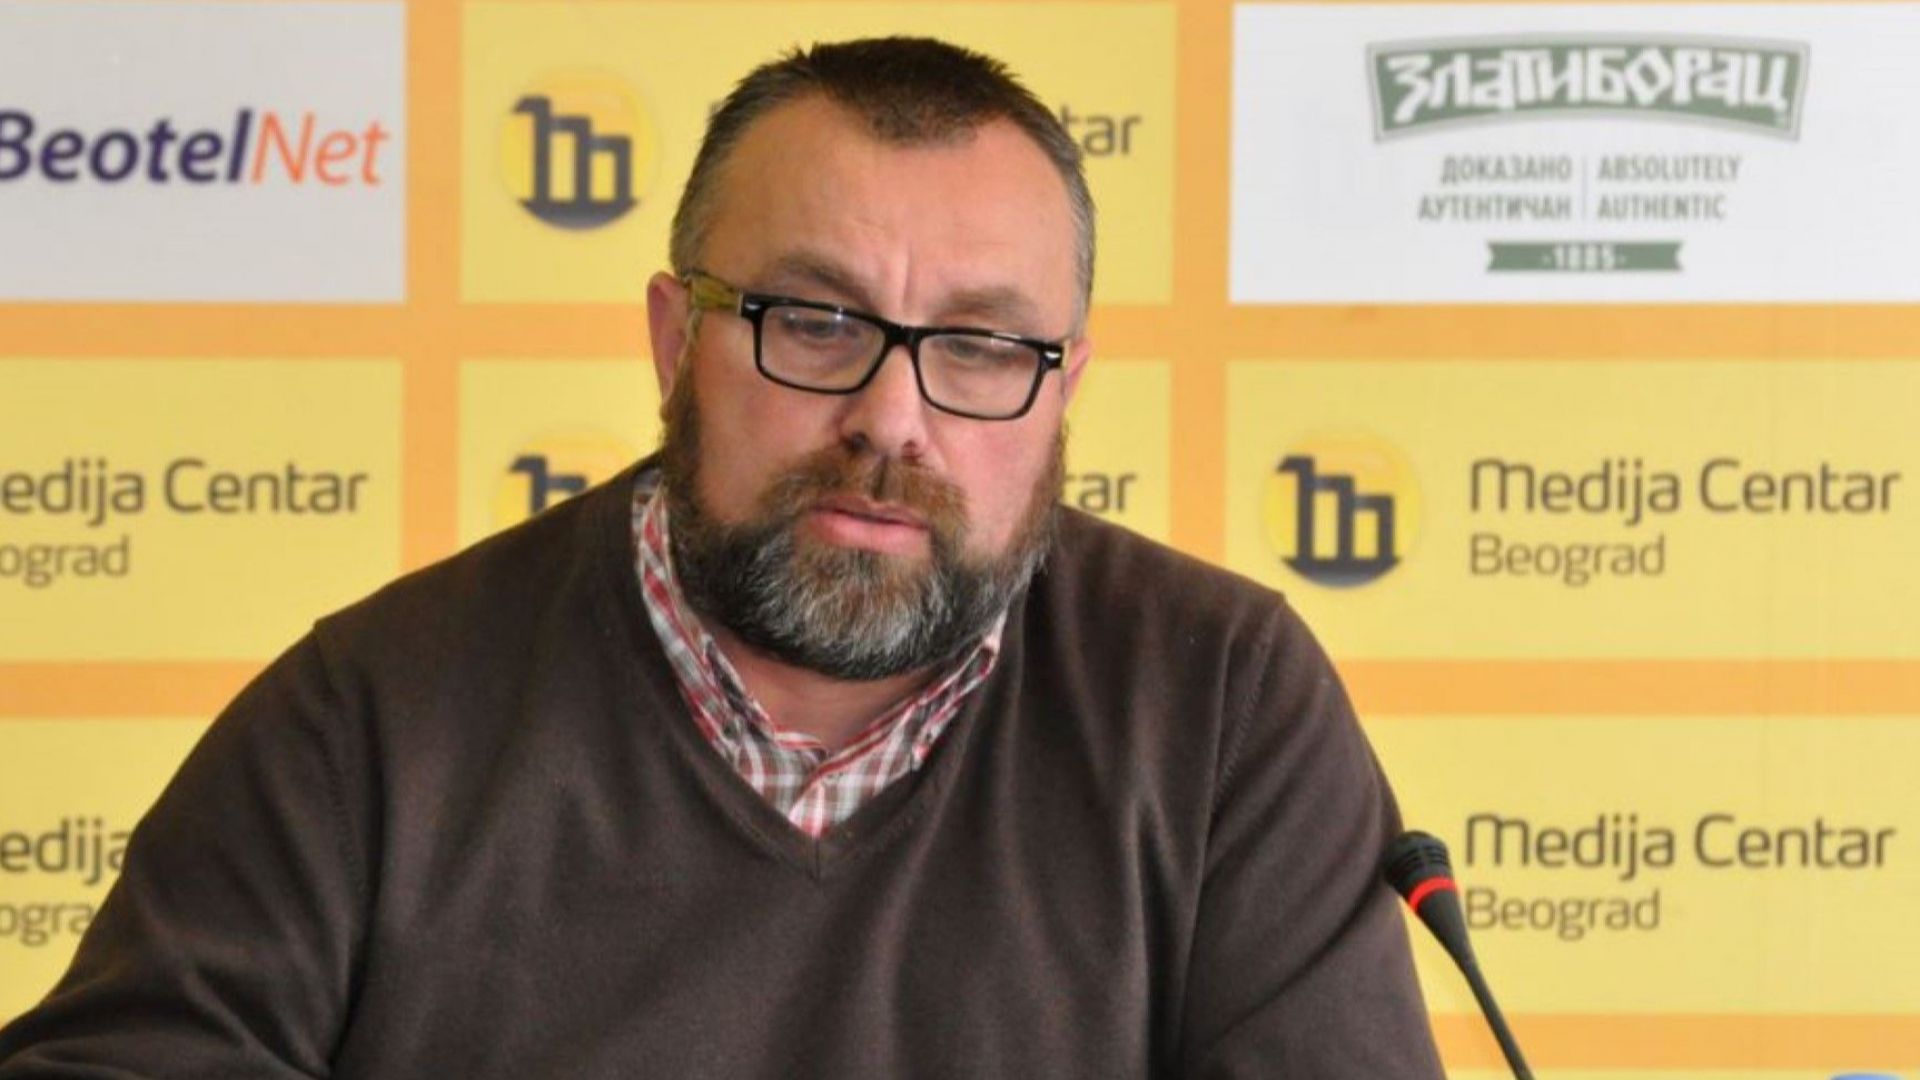 Сръбски разследващ журналист обявен за изчезнал 